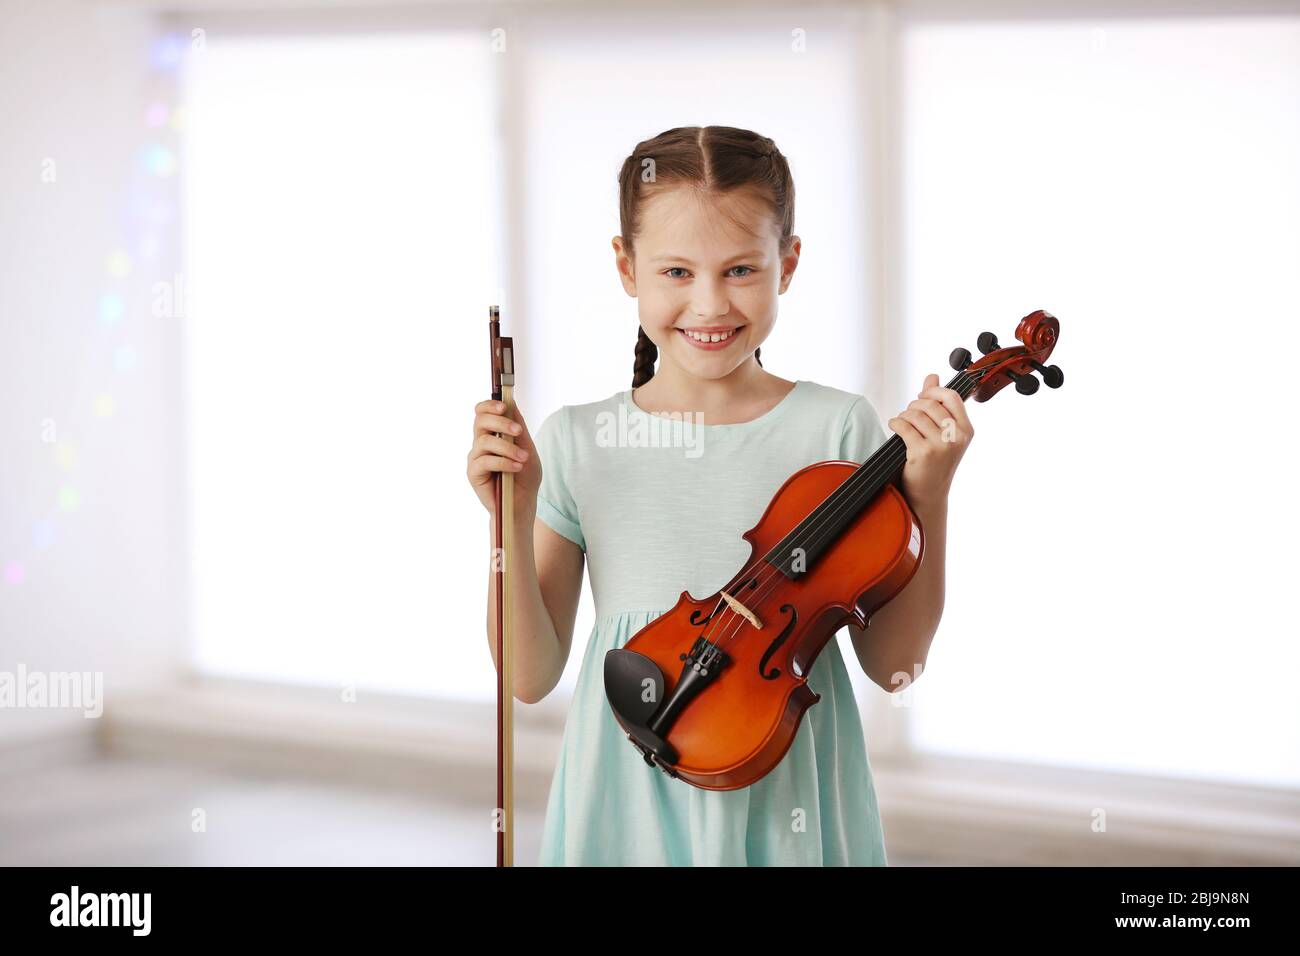 Enfant de violon photo stock. Image du échines, fille - 15110334